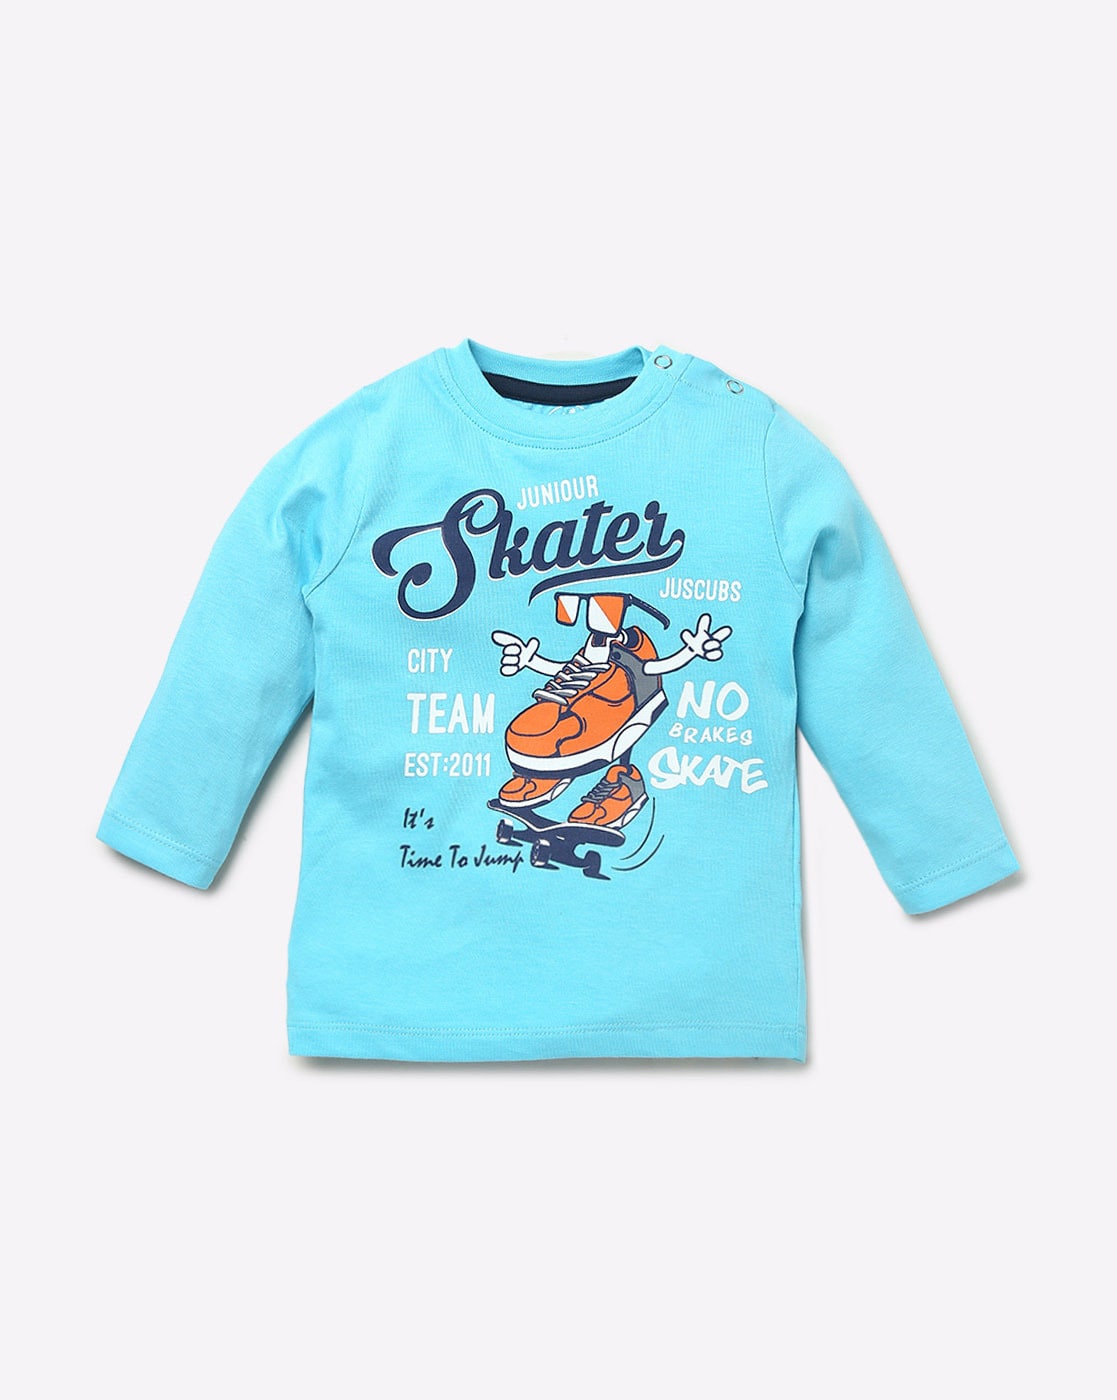 Skater Printed Full Sleeve Tee - Light Blue